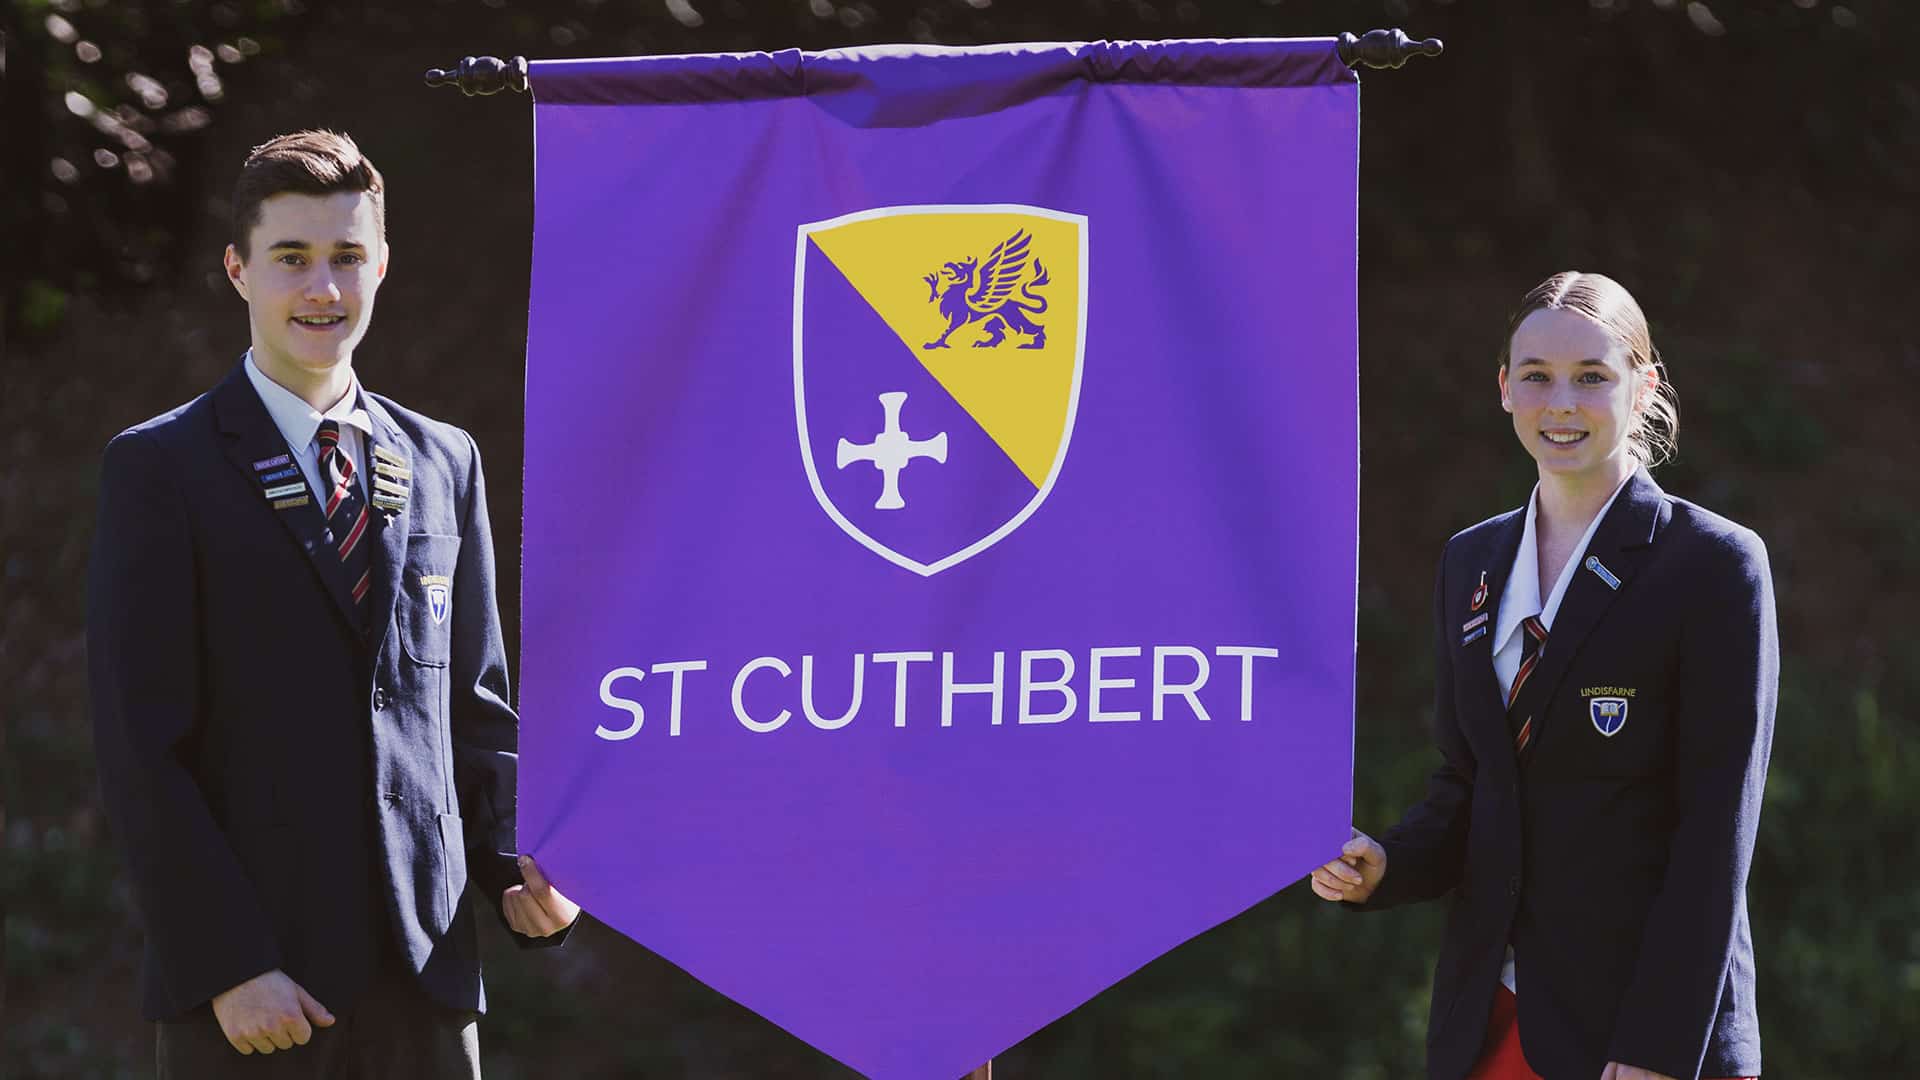 The new St Cuthbert house banner